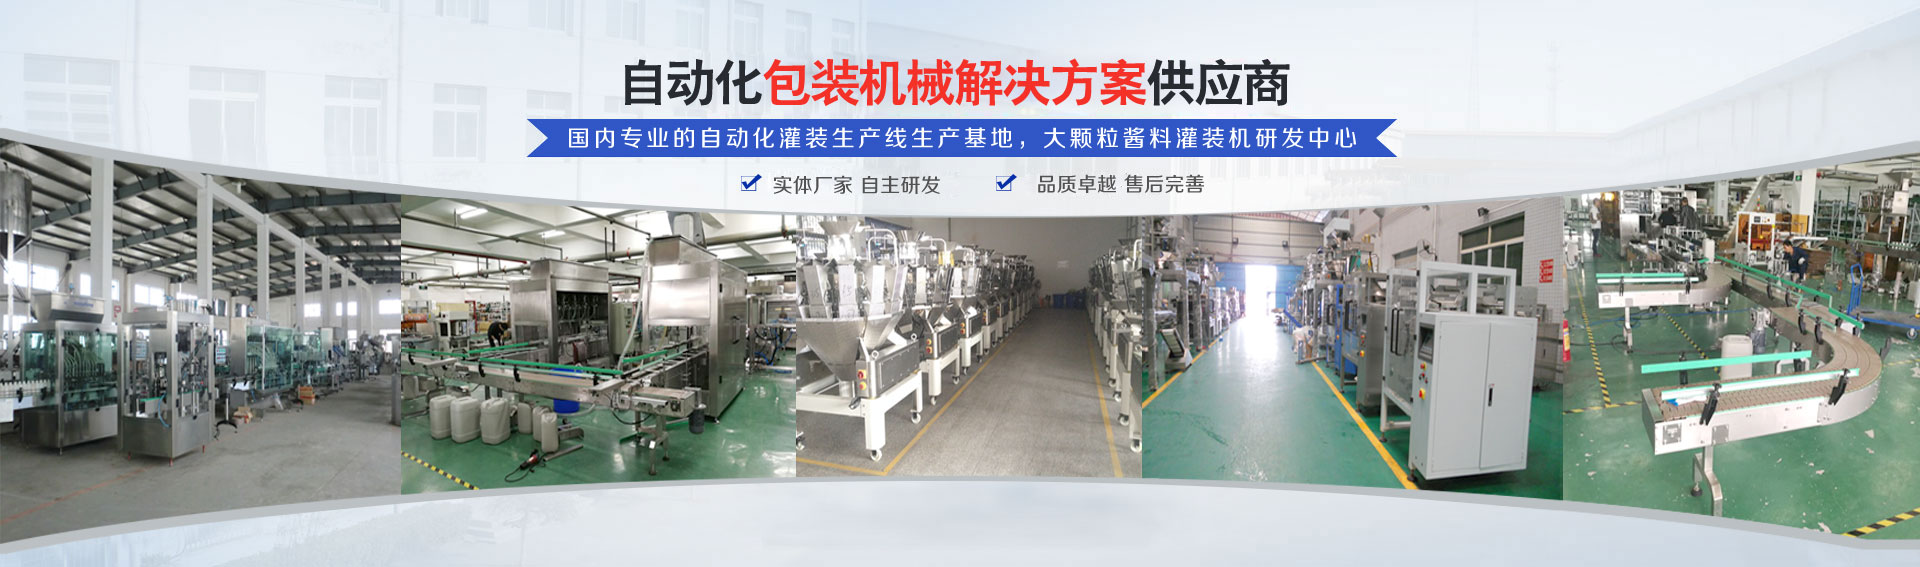 专(zhuan)业(ye)的自动化灌装机生产线研发基地